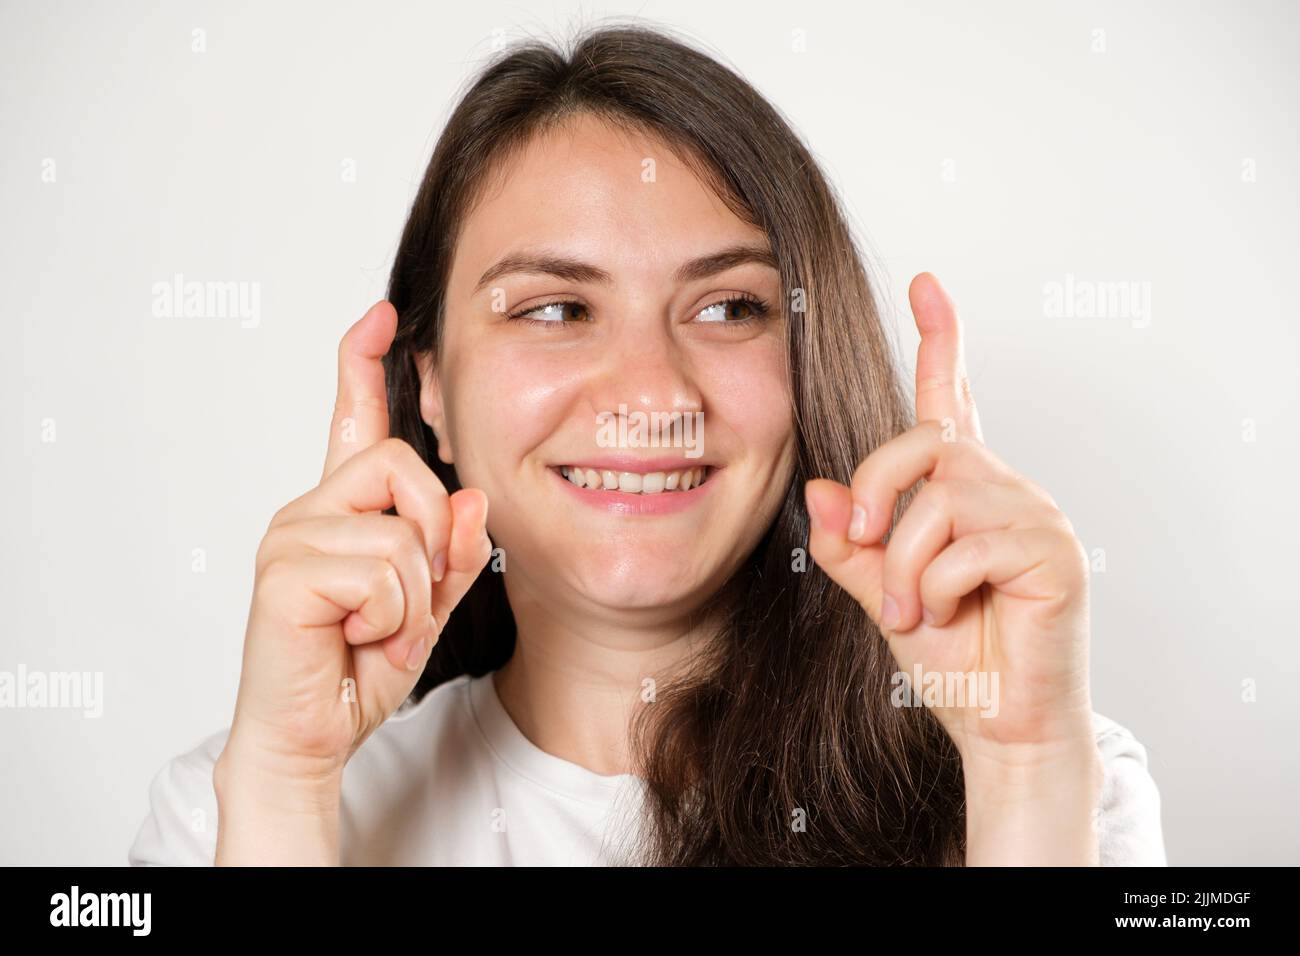 Una donna mostra una capacità insolita di piegare le dita in un solo giunto. Foto Stock